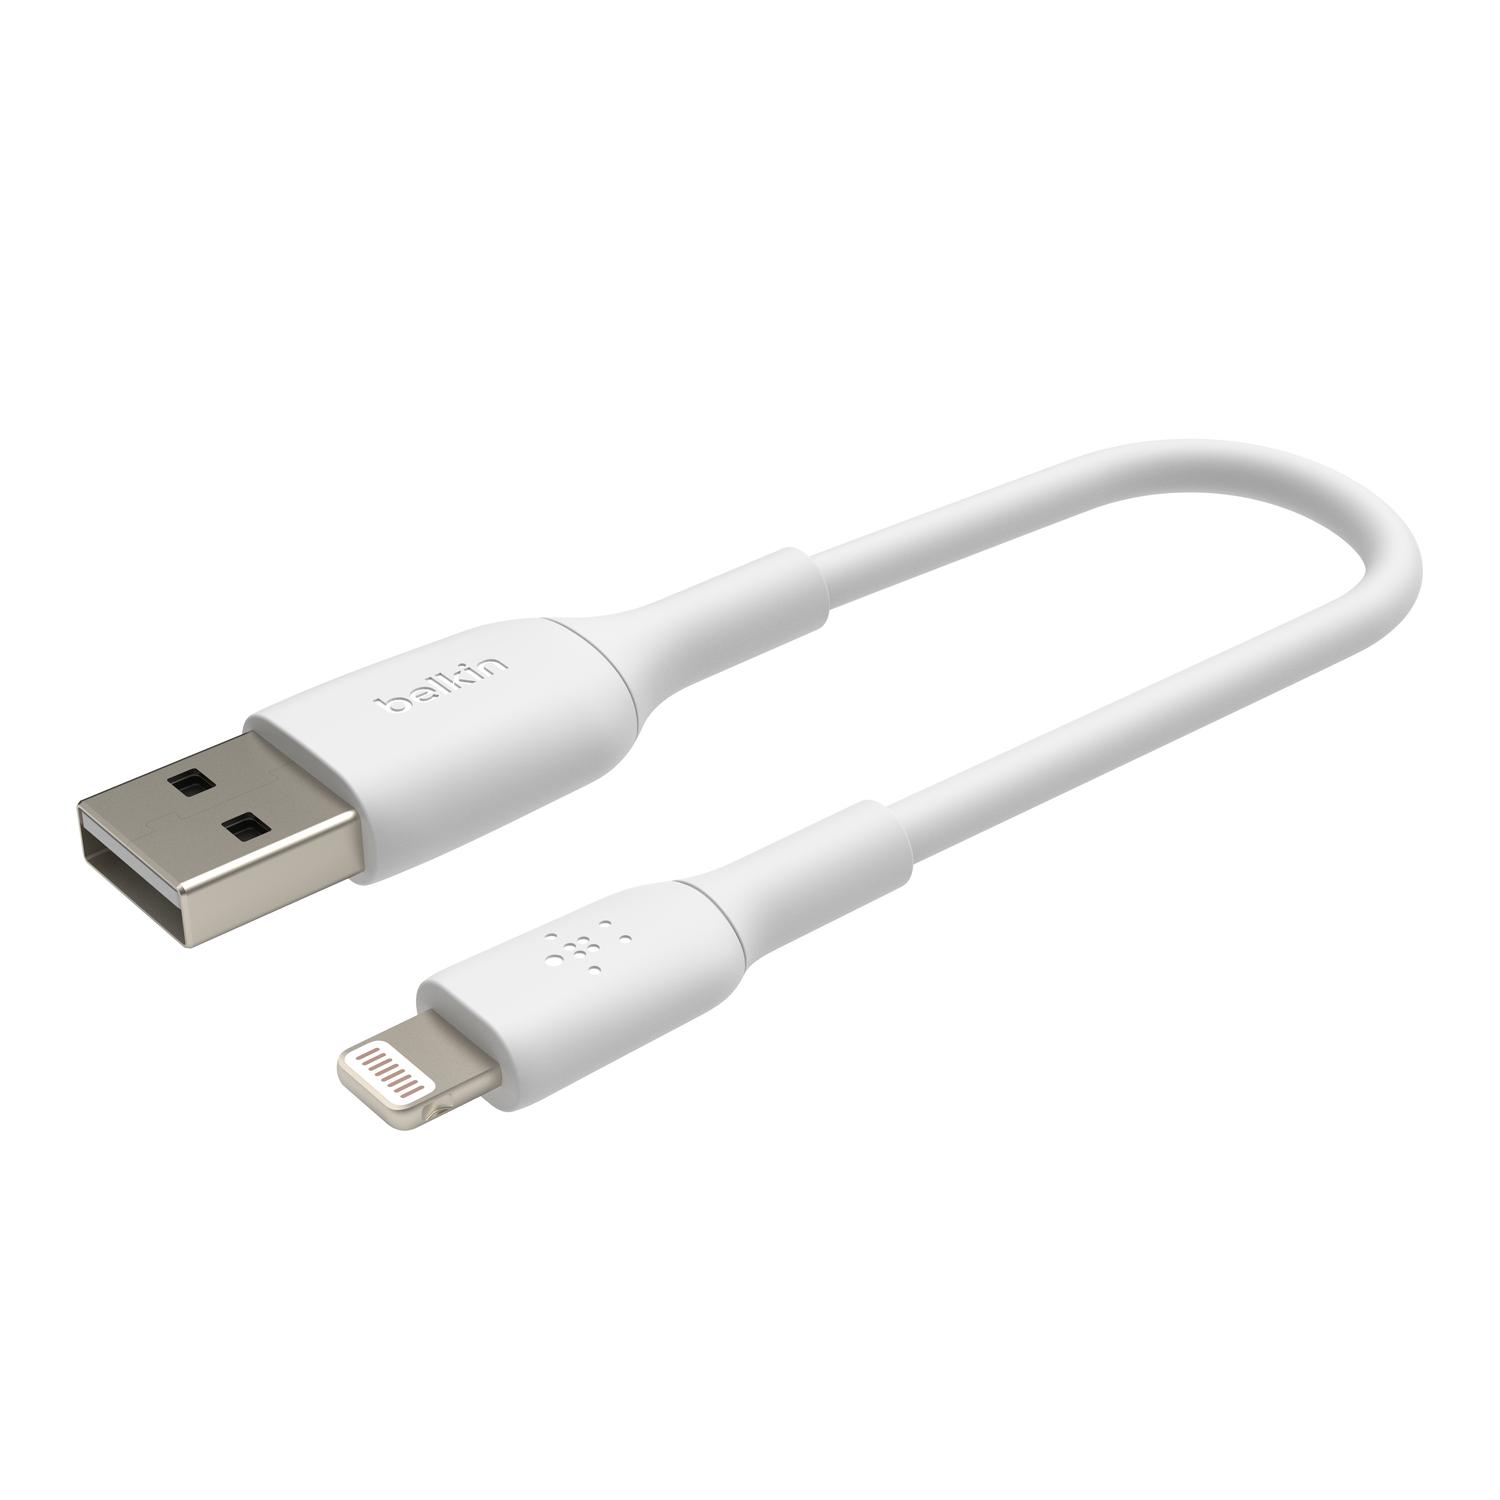 Cable de carga y sincronización de Lightning a USB de 2.4 amperios Metallic  de Belkin - Apple (MX)